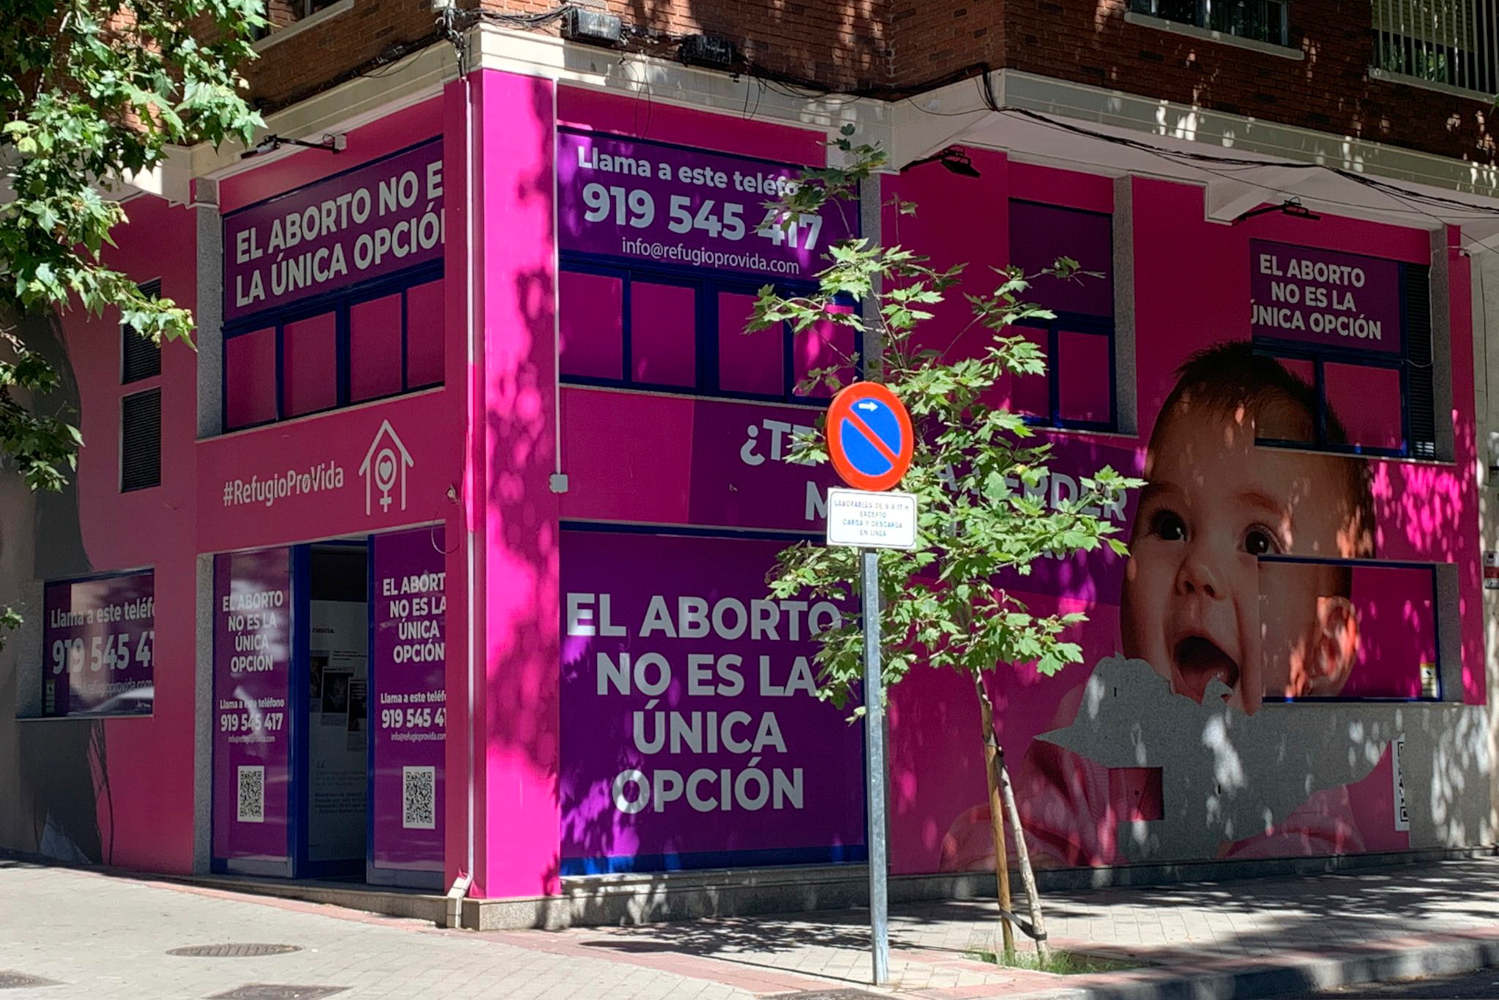 Imagen de clínicas abortivas